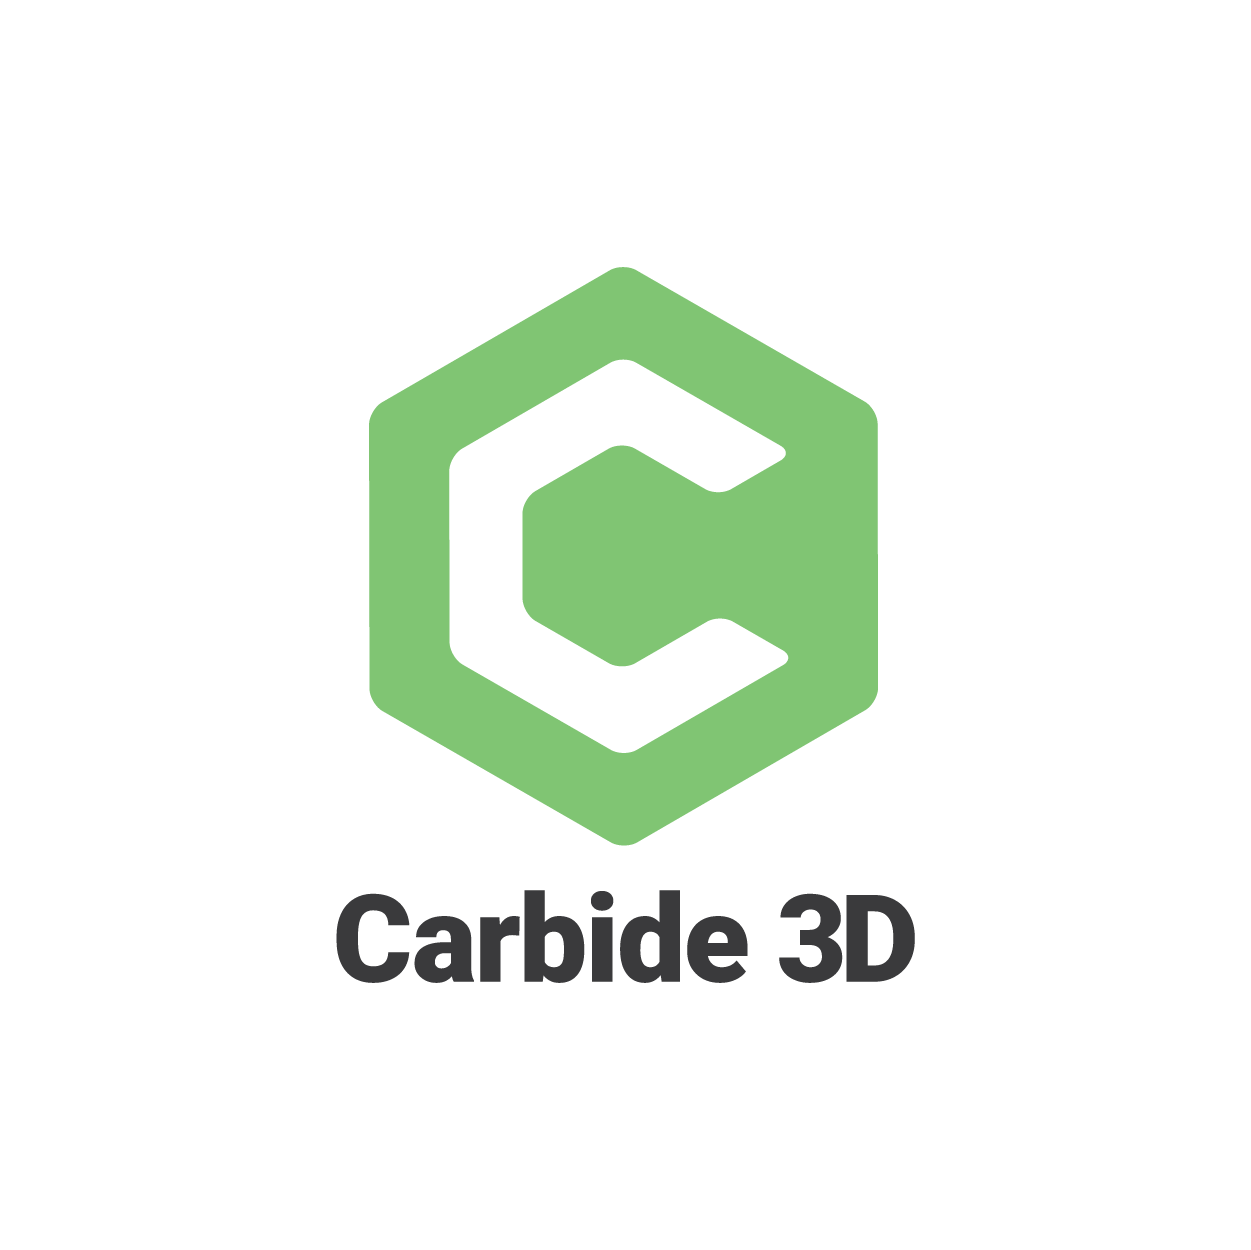 Carbide 3D logo